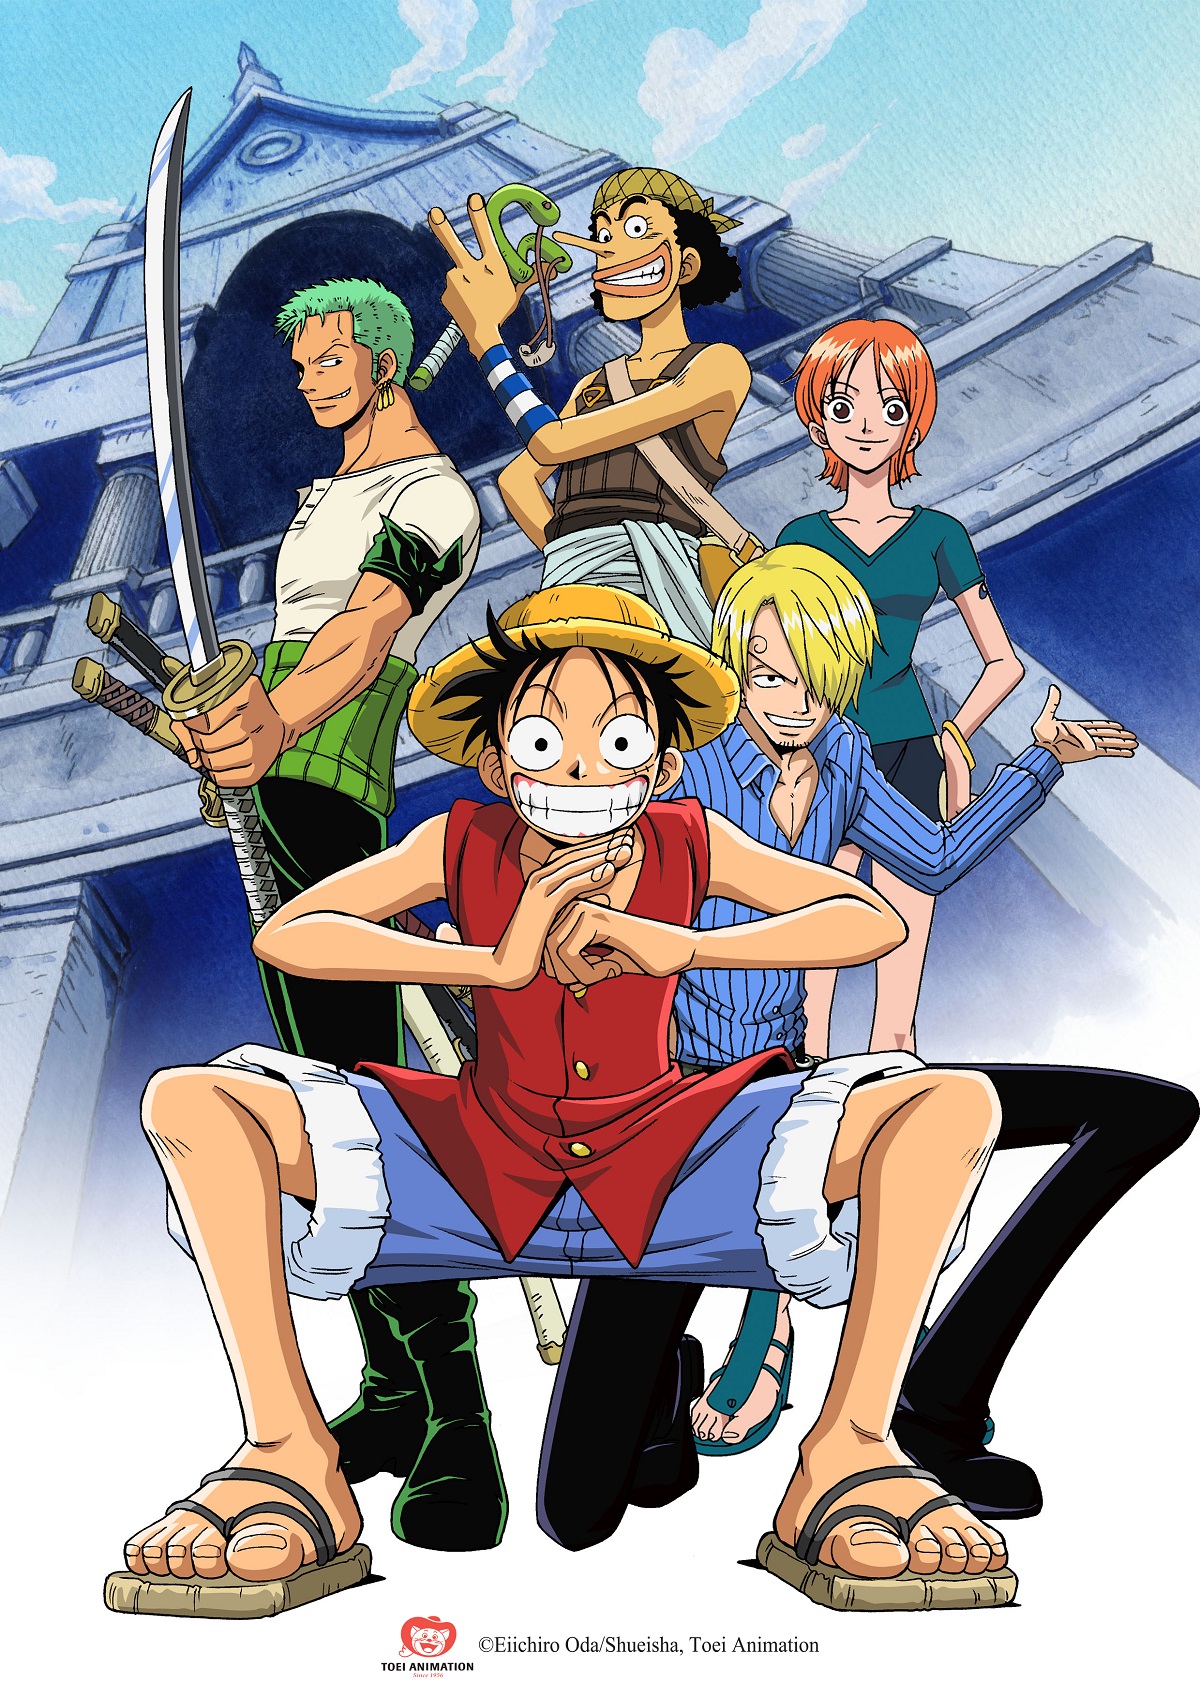 Thế giới One Piece sẽ không còn xa lạ với người chơi Việt Nam khi đã ra mắt phiên bản dành riêng cho fan hâm mộ tại đất nước này. Hình ảnh liên quan đến One Piece Việt Nam sẽ khiến bạn bất ngờ với những cảnh quay đặc sắc và giọng nói ngọt ngào của các nhân vật.